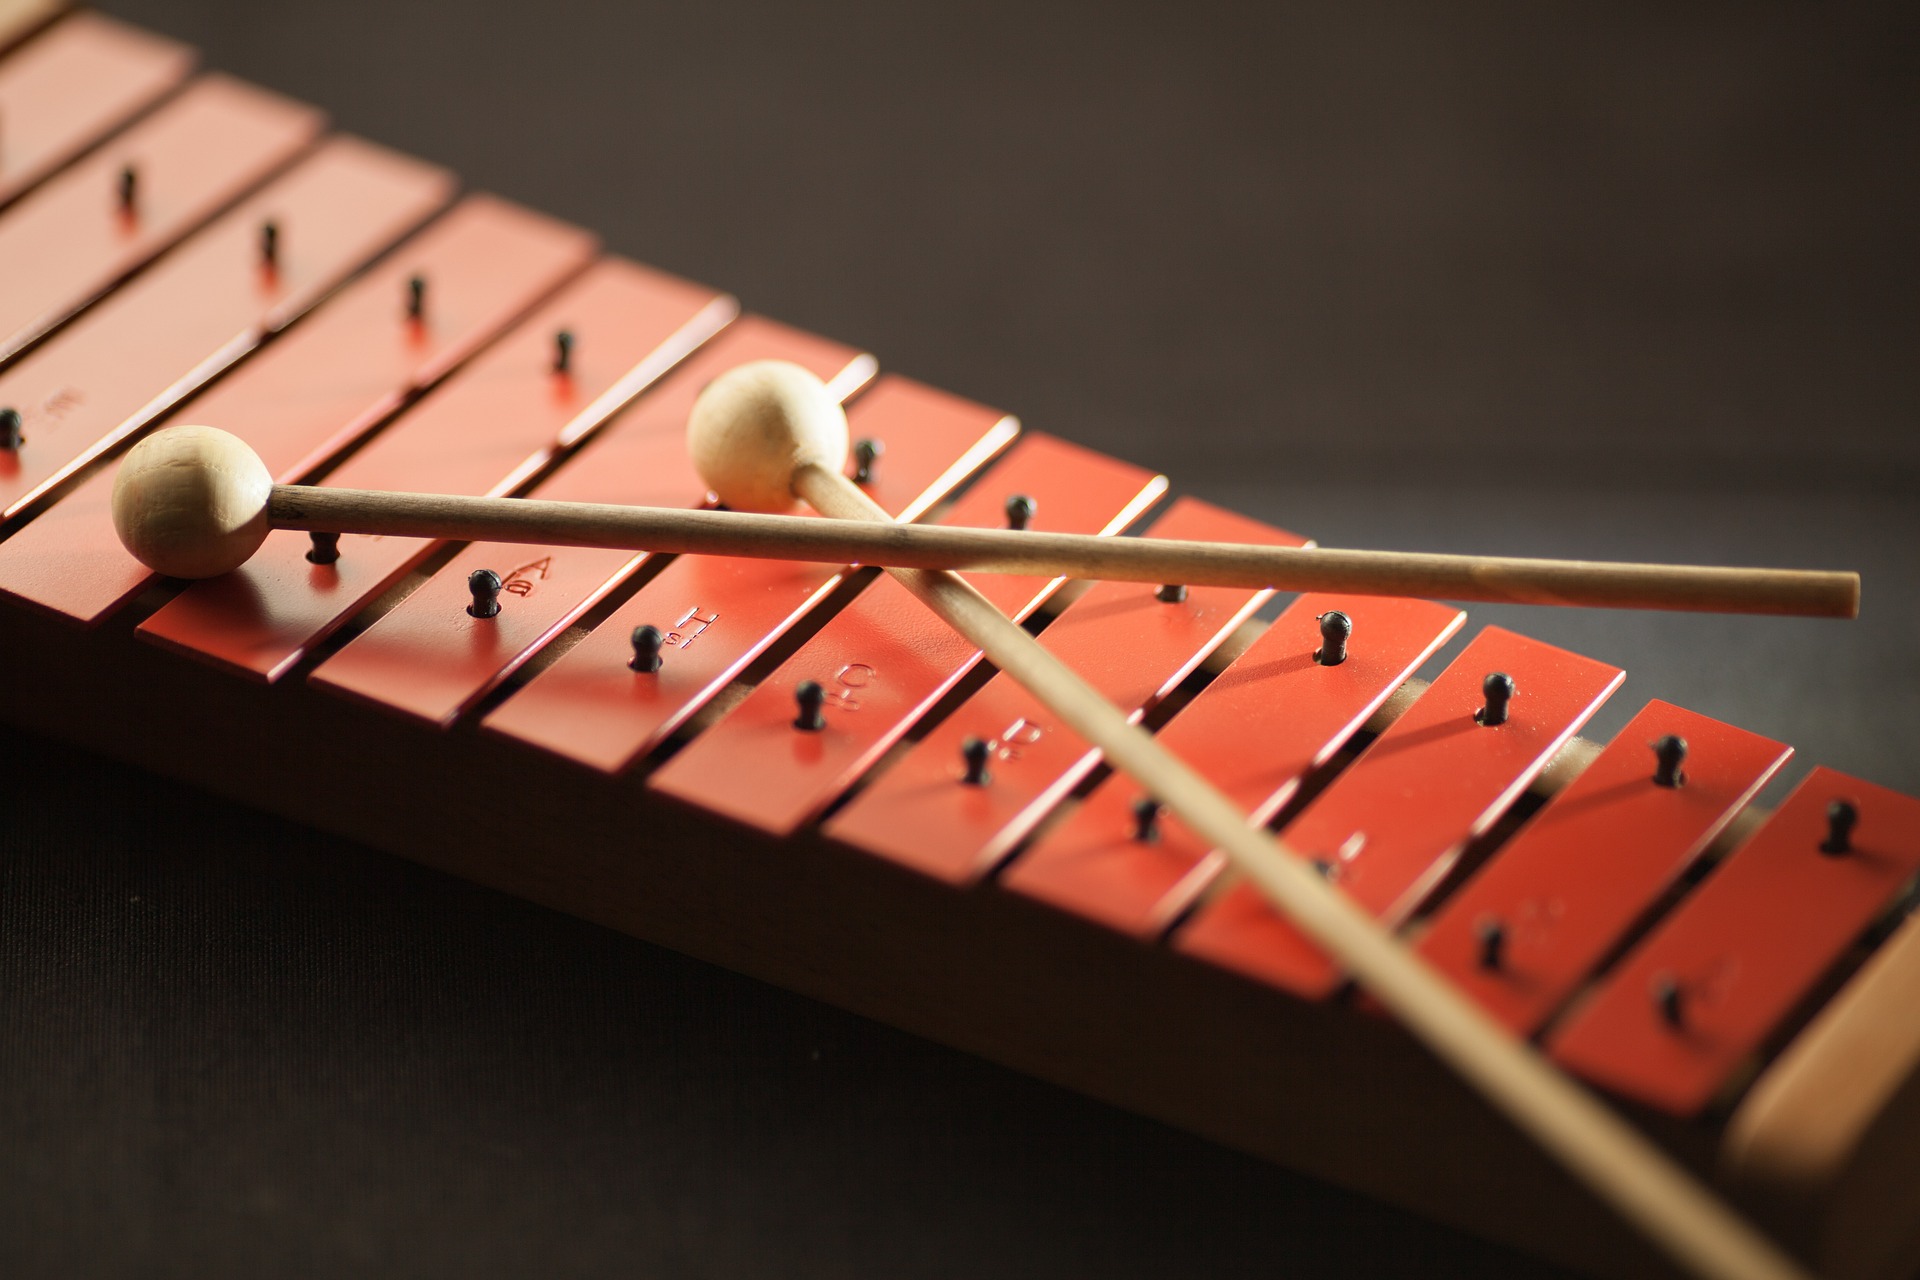 Tambourin, Instrument de Percussion Idéal Couleur Bois Tambours  Synthétiques Tête Tambour à Main pour la Performance pour l'apprentissage  des